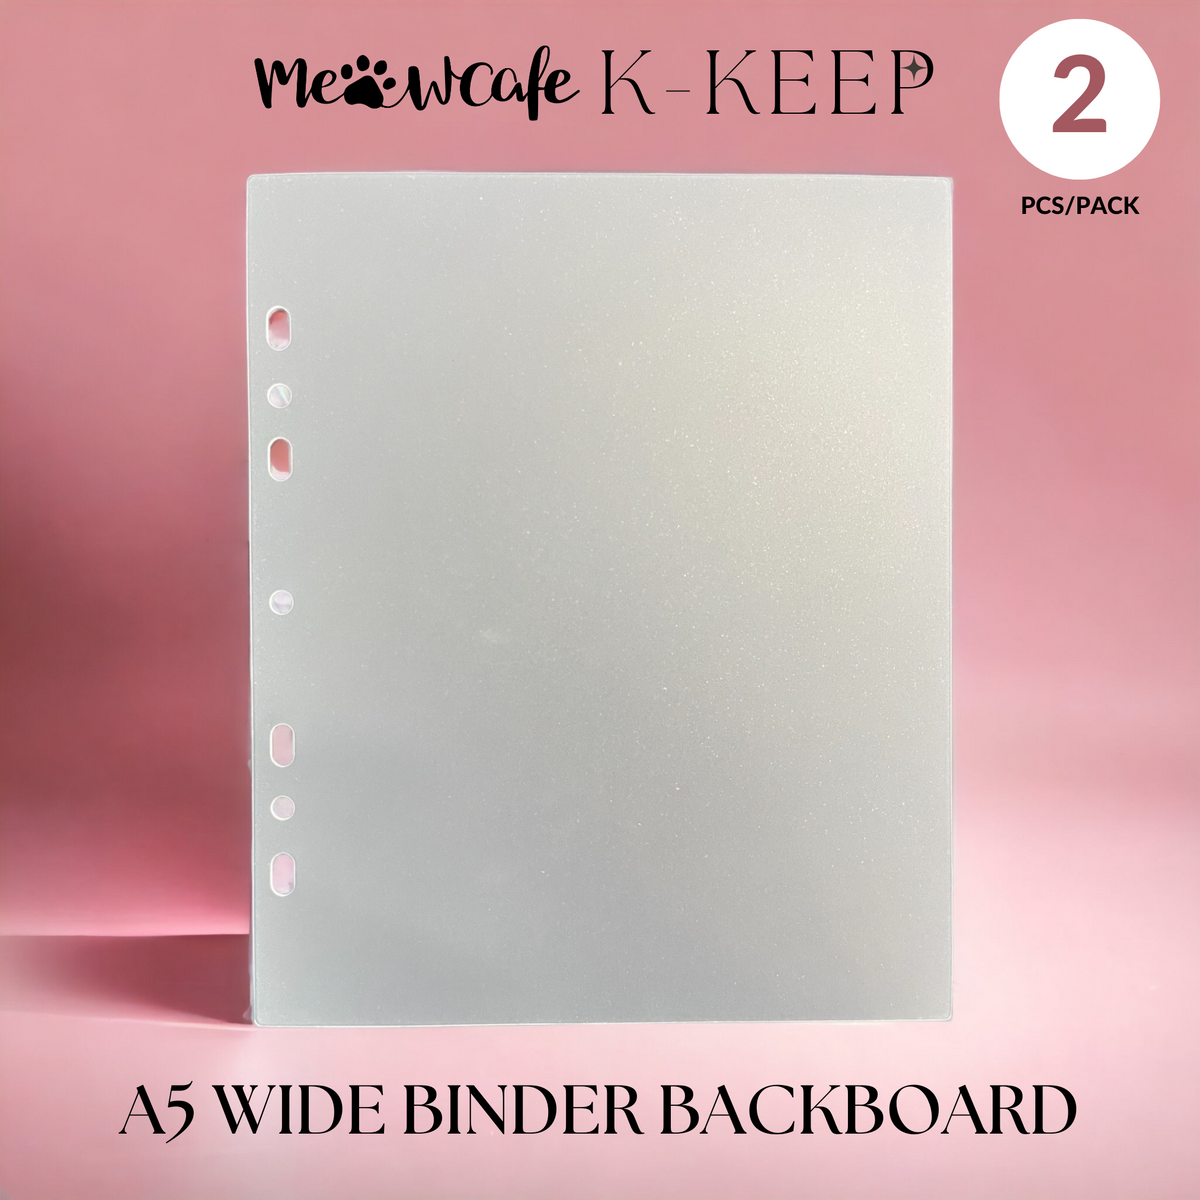 K-KEEP [Binder Backboards] - For [A4 Standard] Binder - 11 Holes Gener